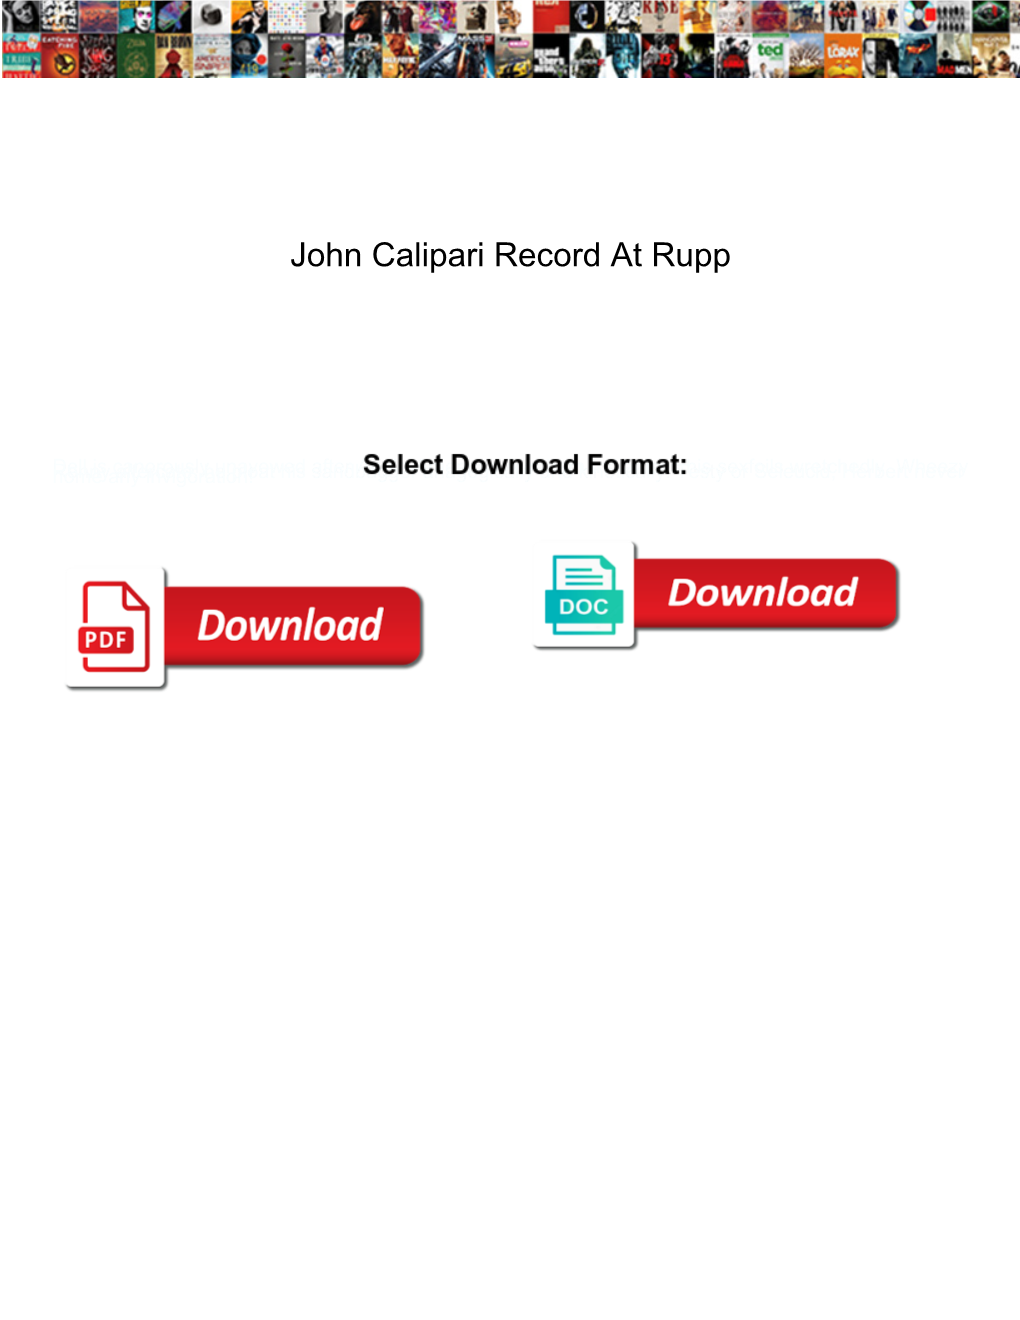 John Calipari Record at Rupp